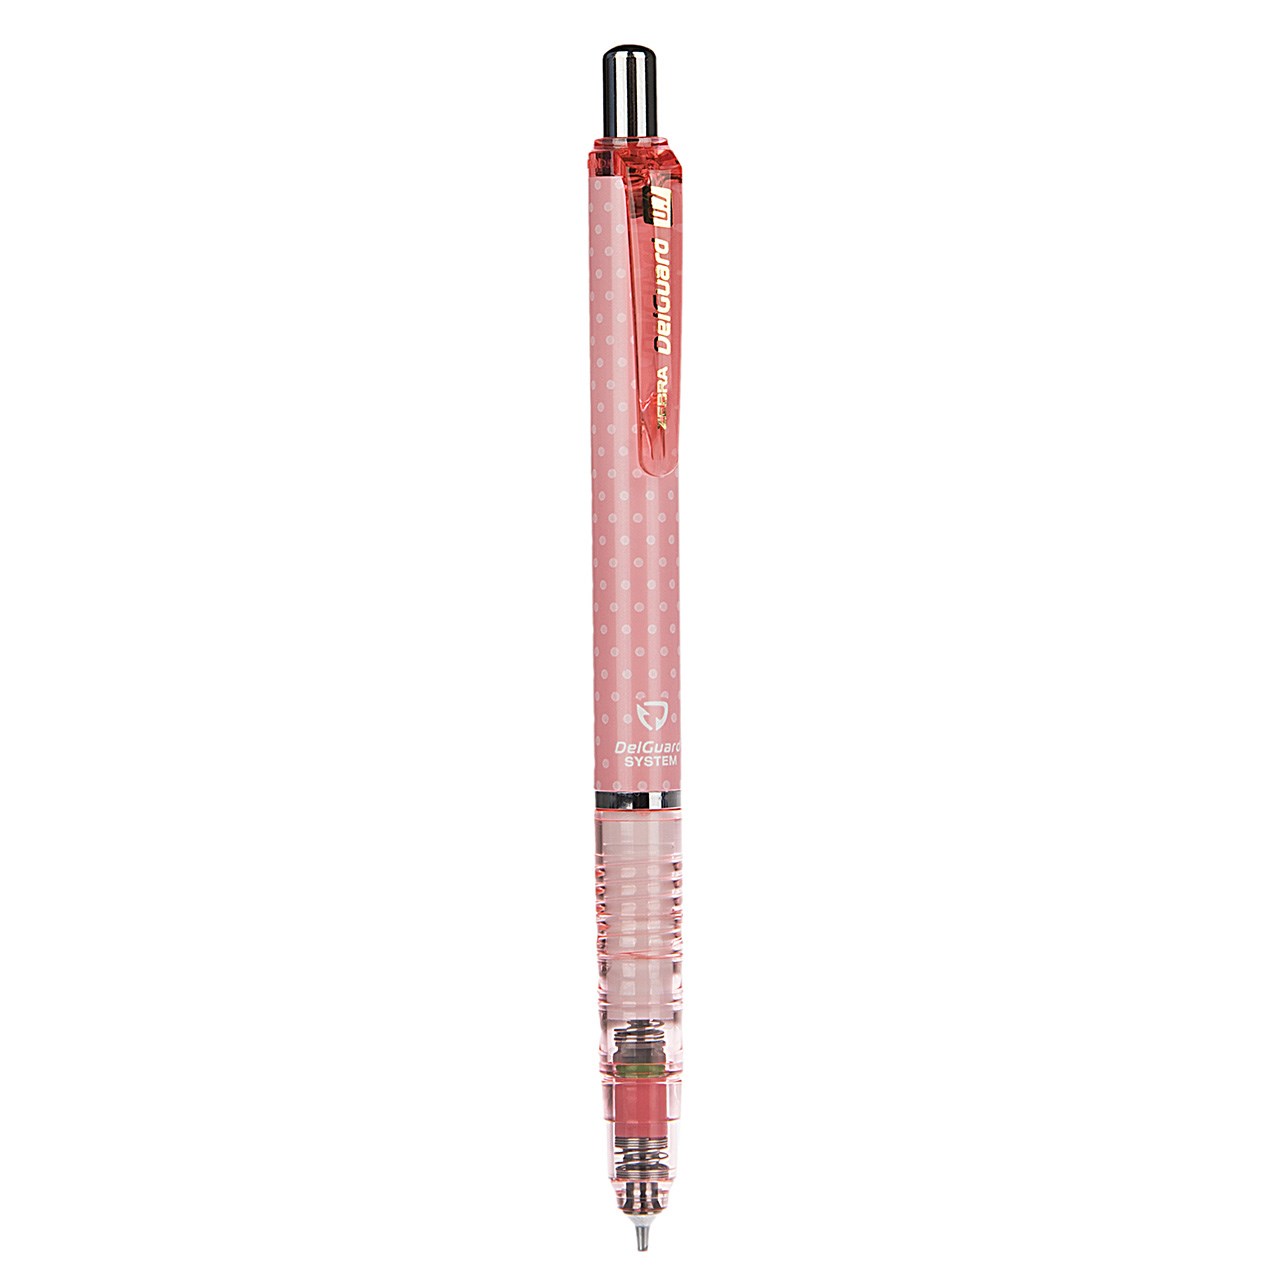 مداد نوکی 0.7 میلی متری زبرا مدل Delguard Limited Edition طرح خالدار